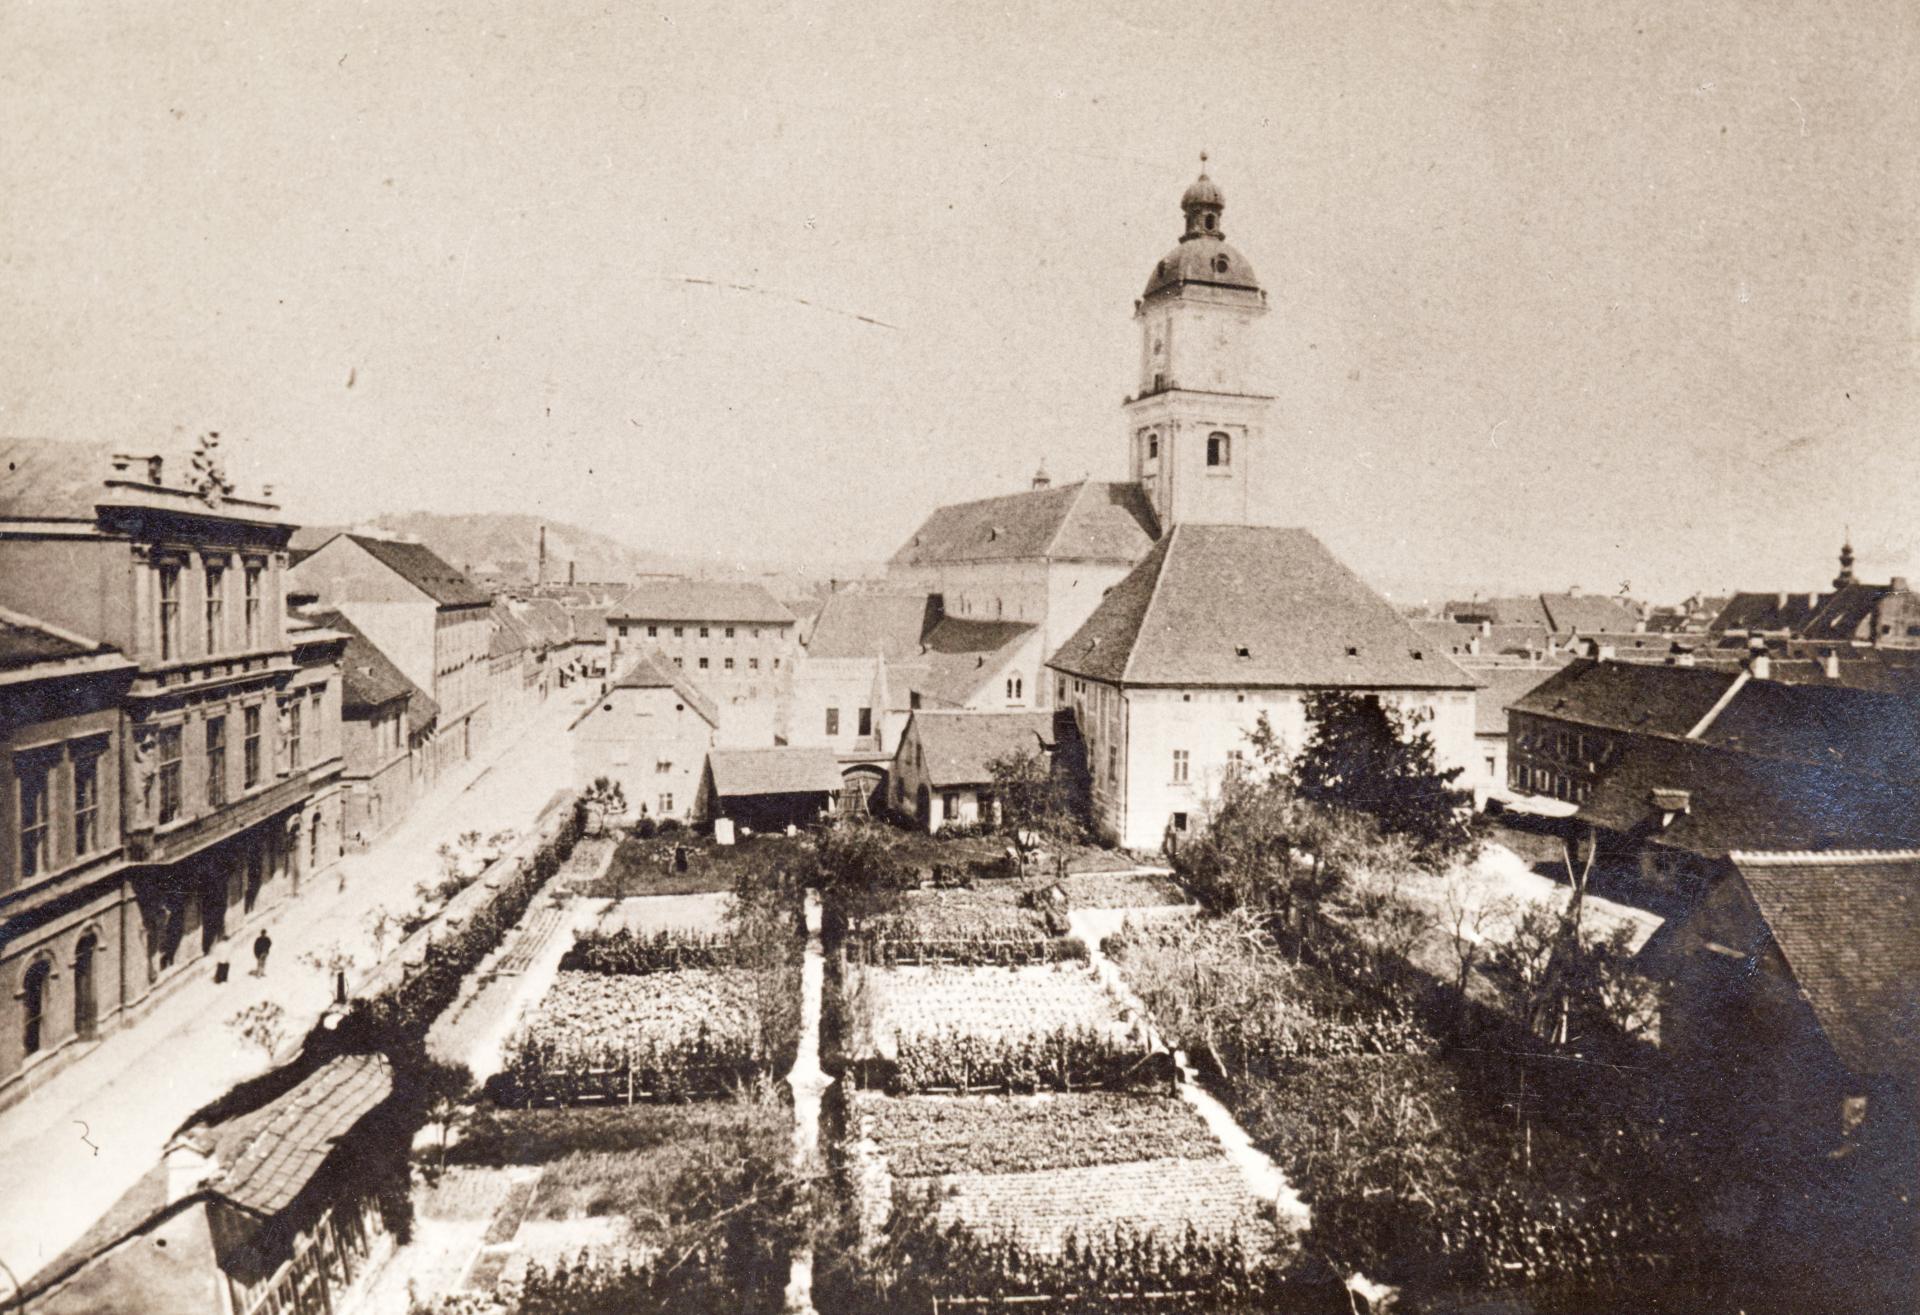 DNEVNA: Prvo mestno pokopališče smo v Mariboru imeli na Slomškovem trgu